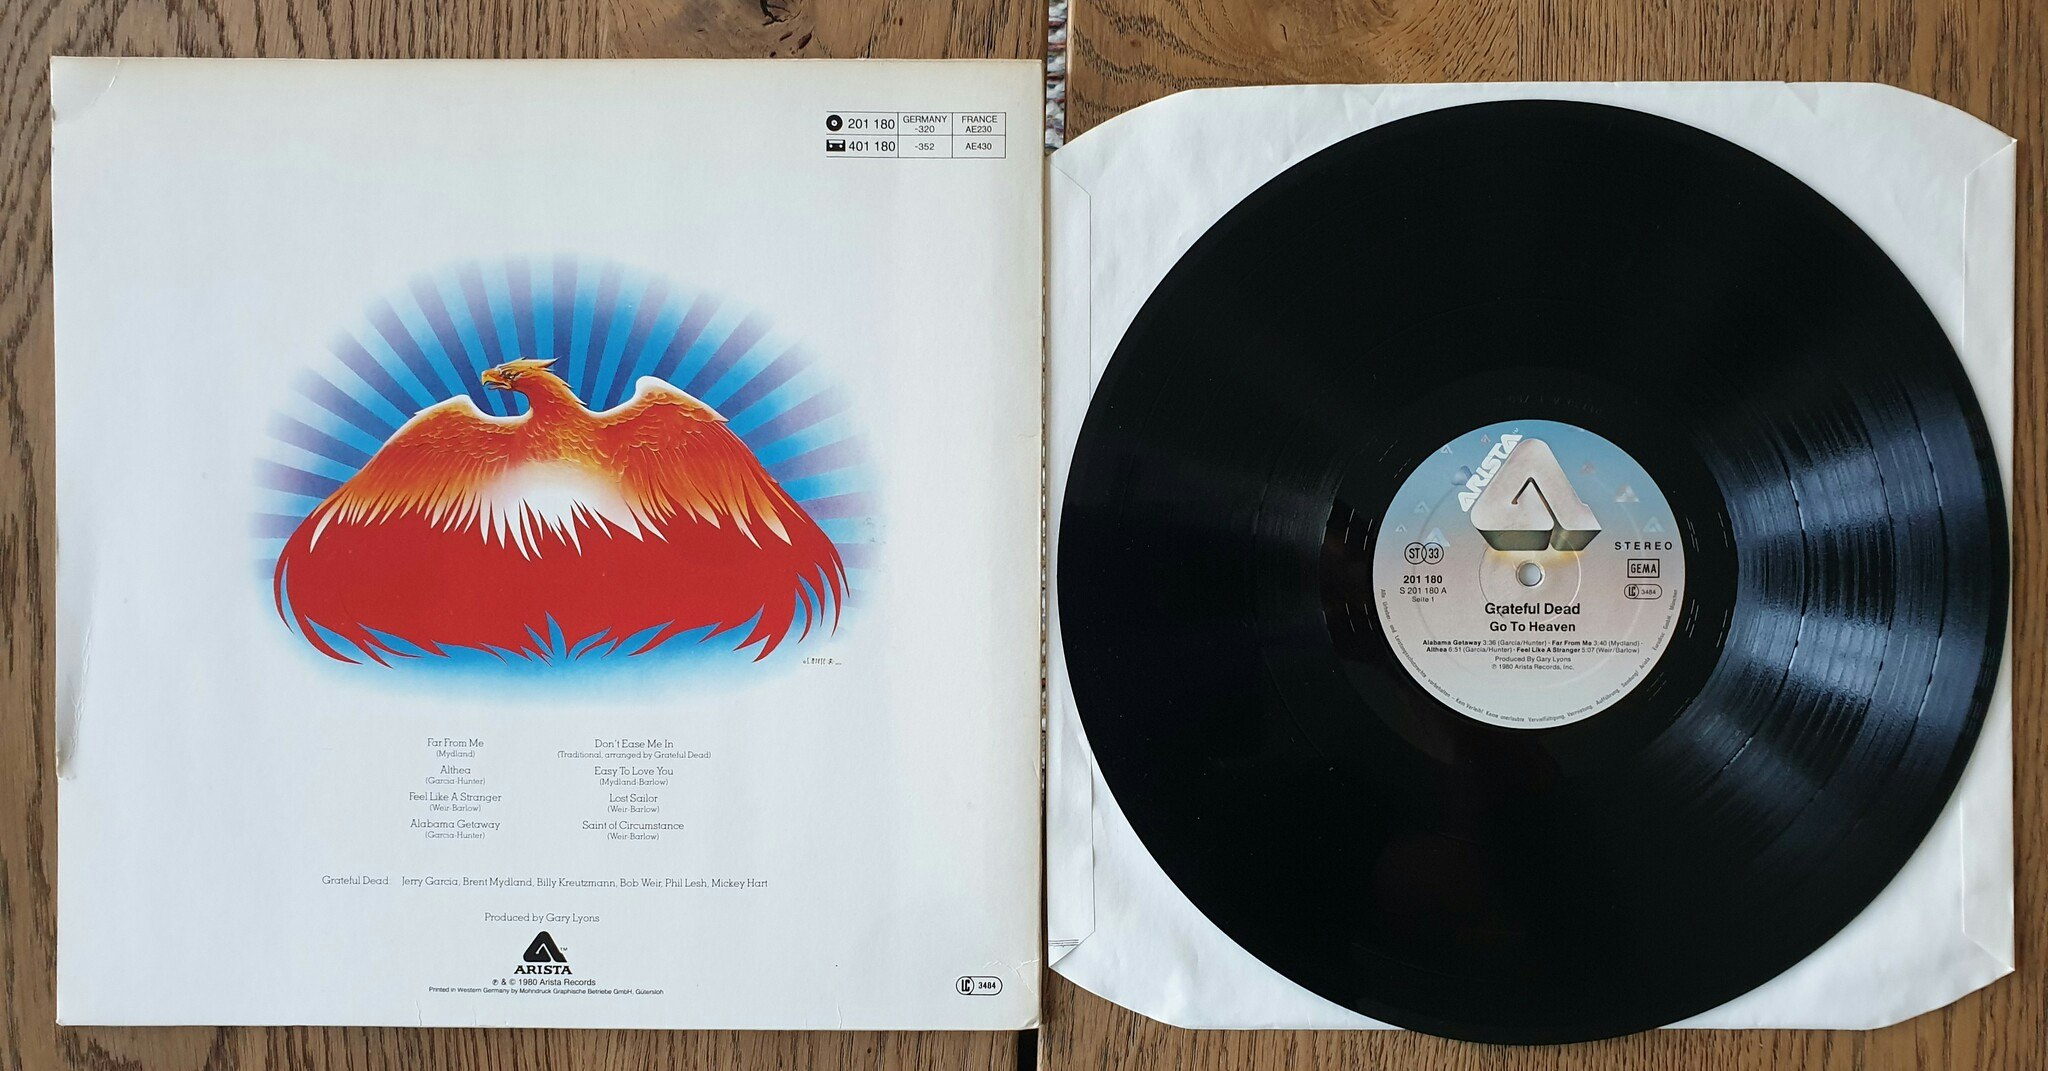 Grateful Dead, Go to heaven. Vinyl LP